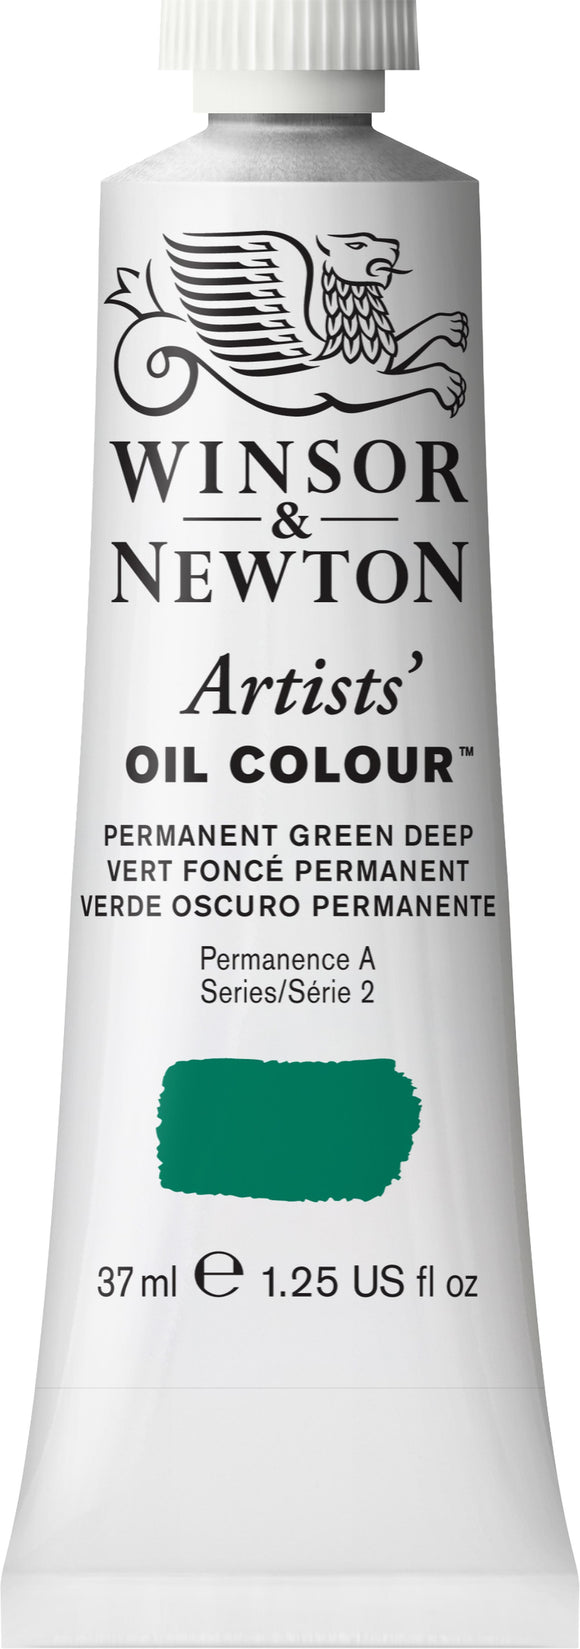 Winsor & Newton Artist Oil Colour Permanent Green Deep 37Ml